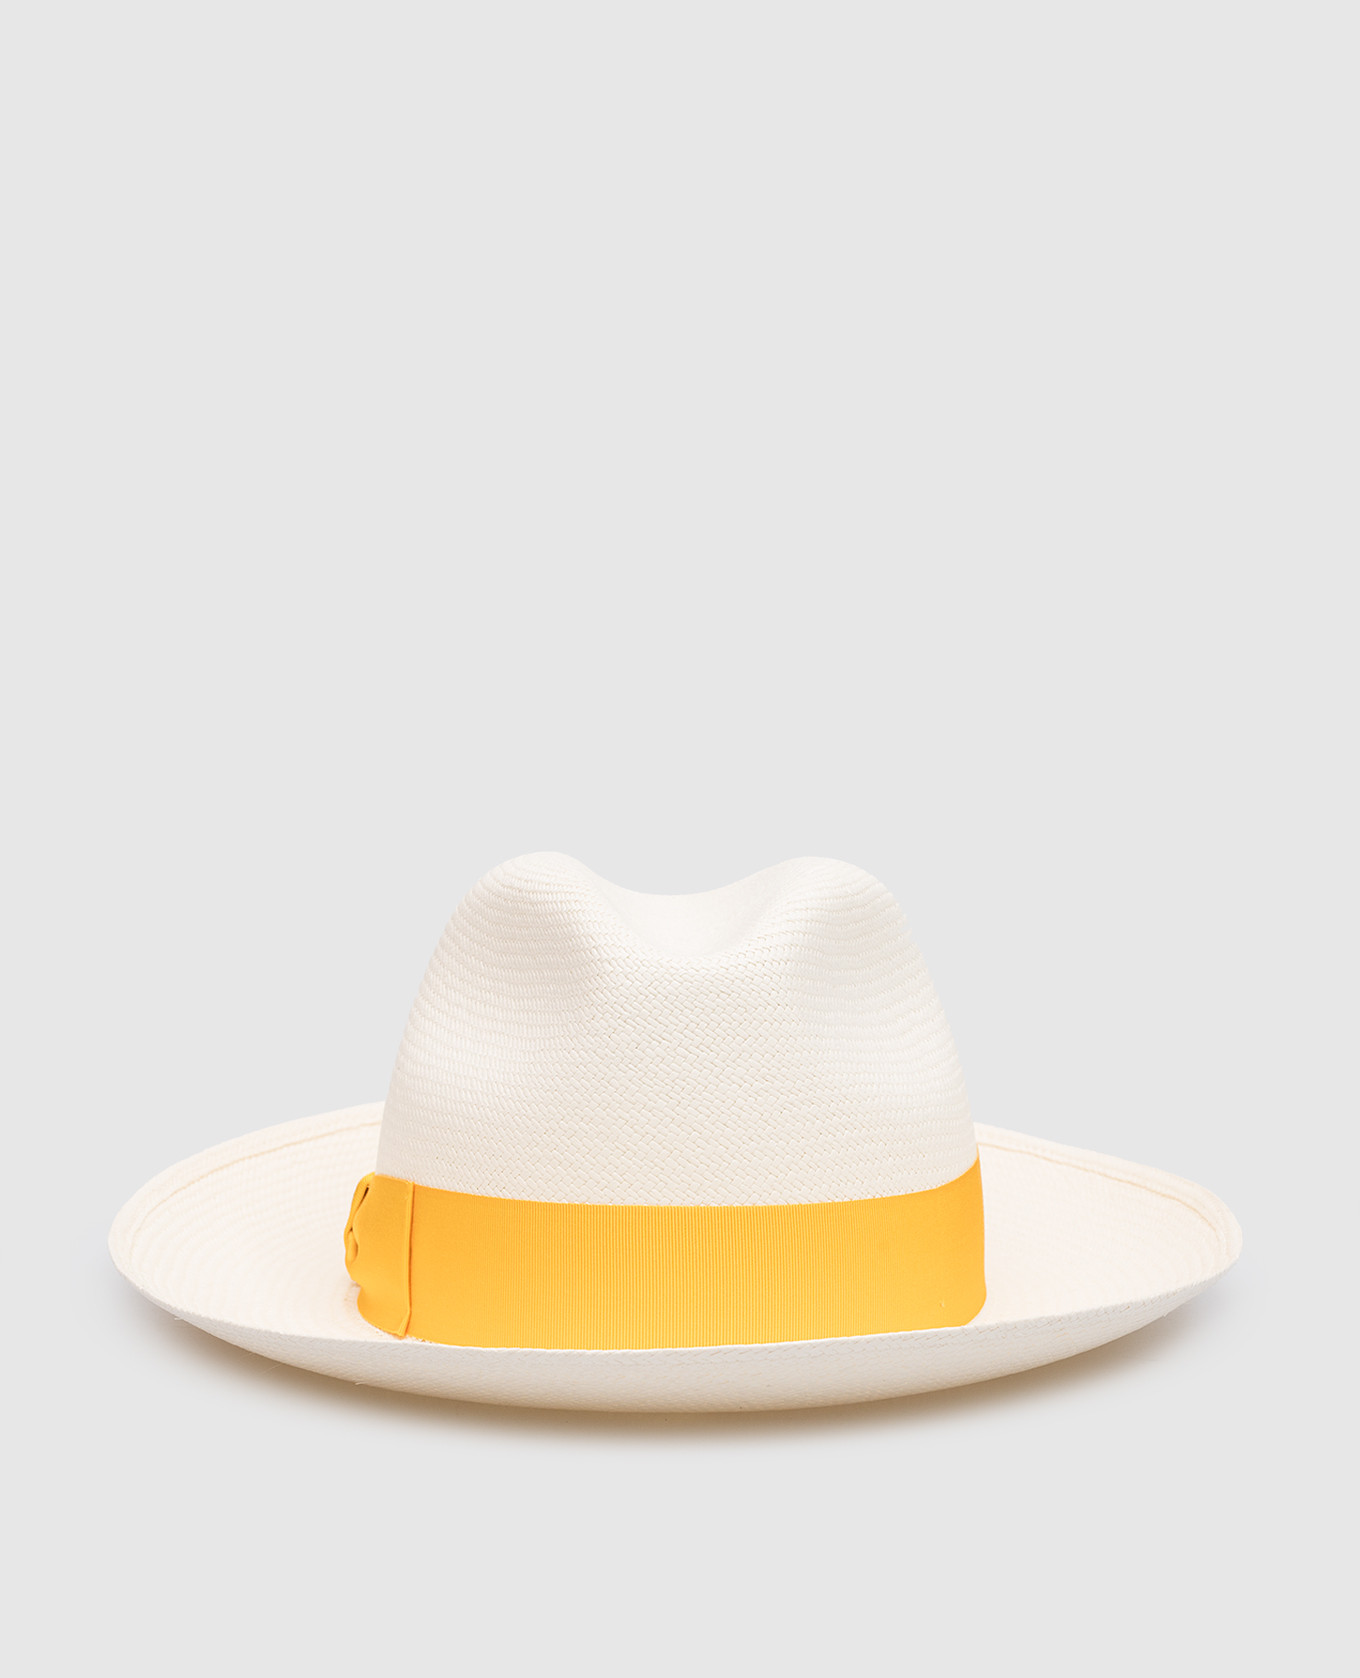 Giulietta white straw hat